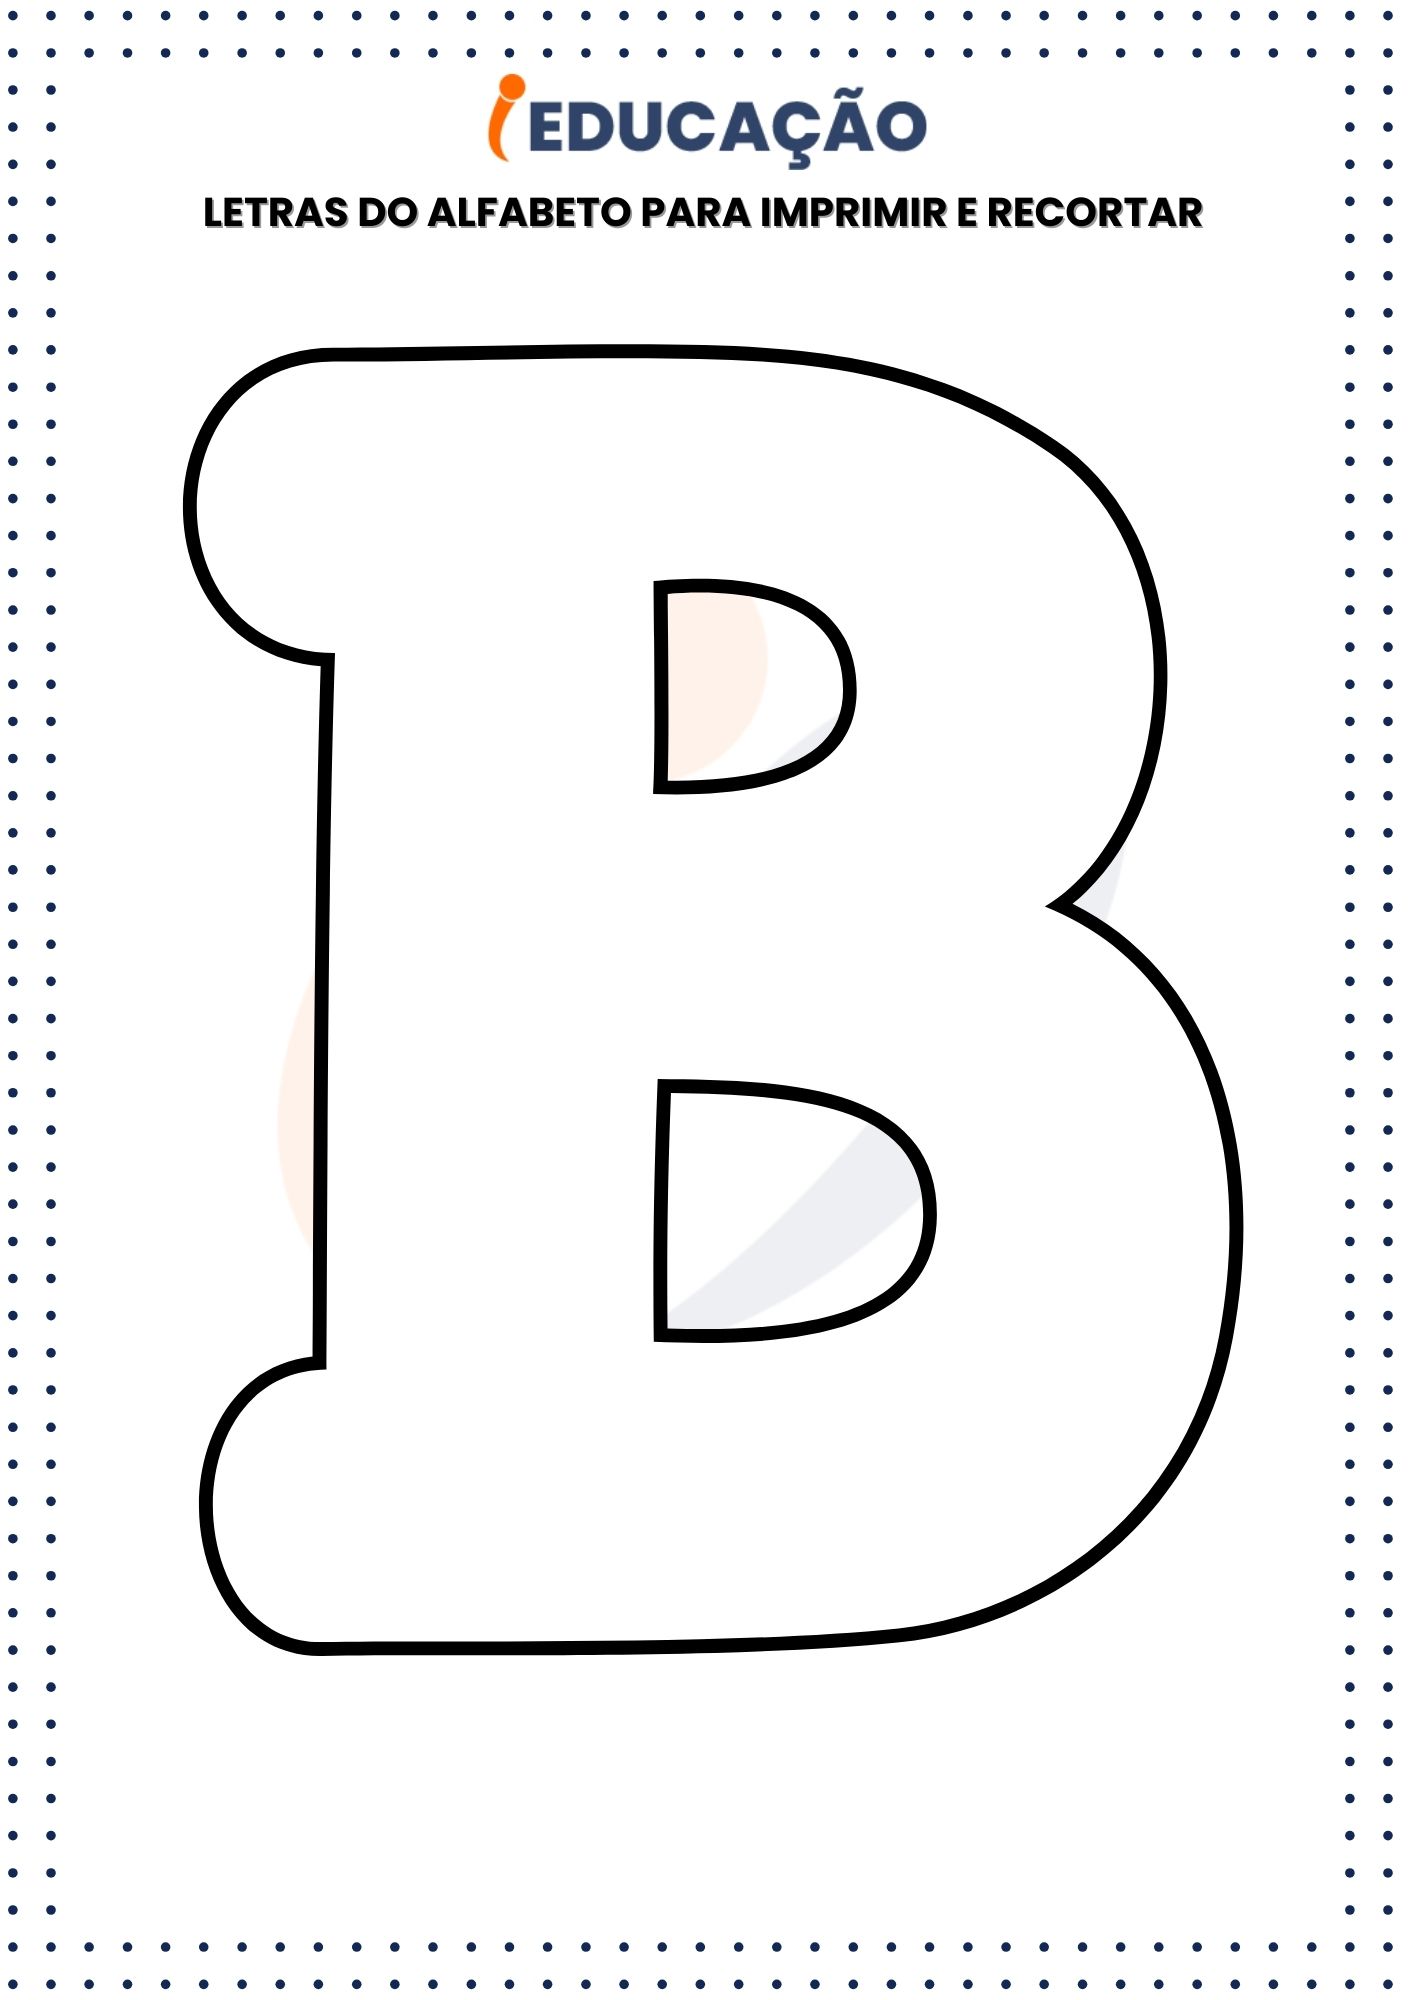 Letras do Alfabeto Para Imprimir e Recortar B